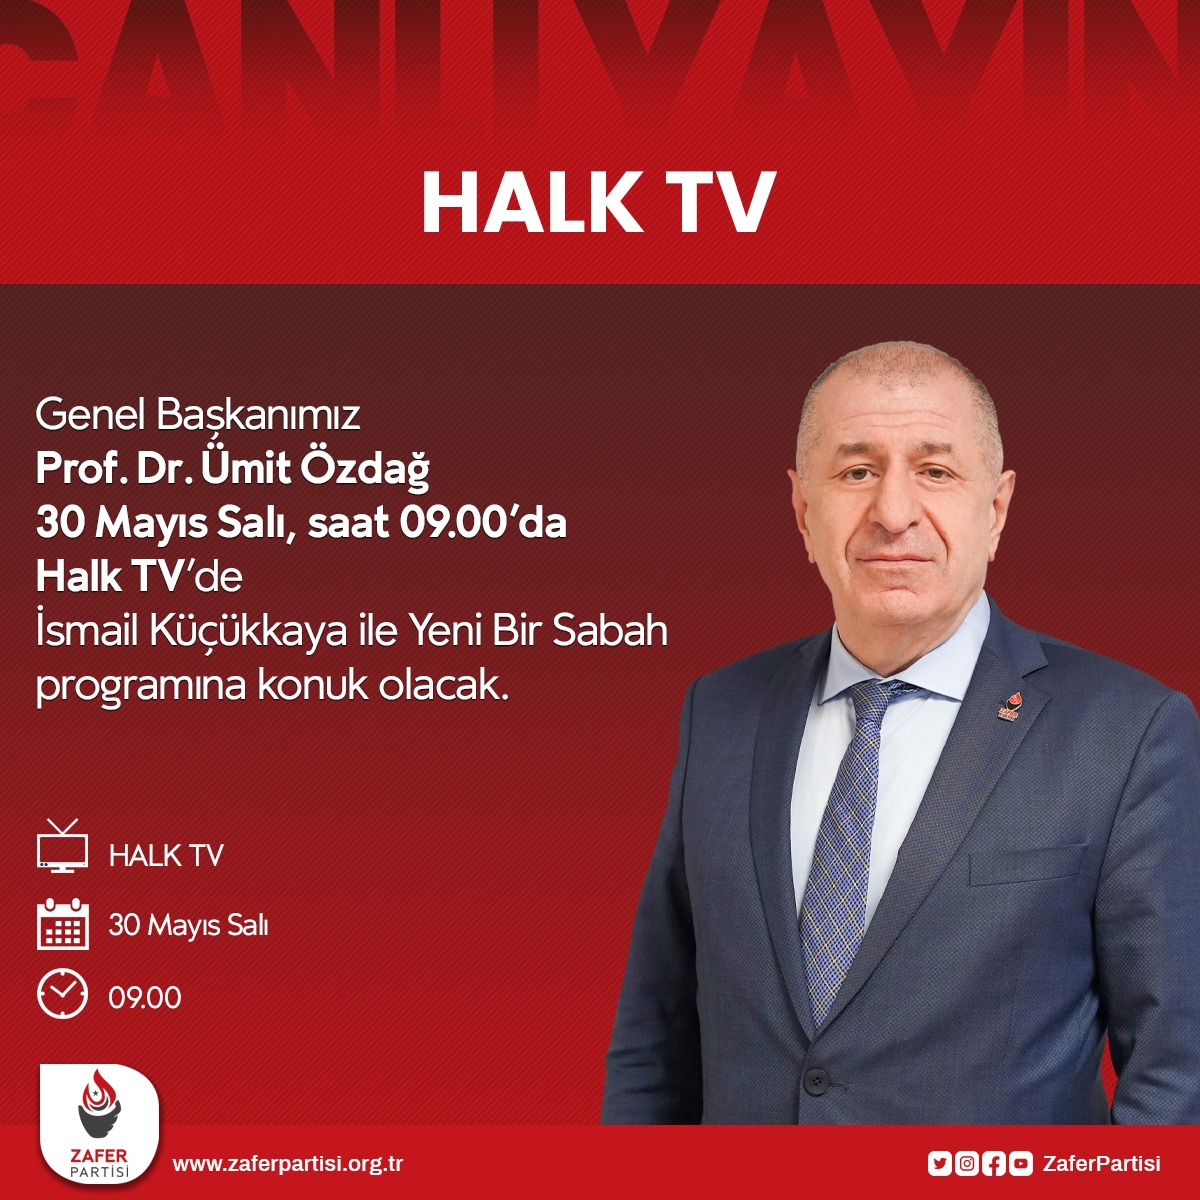 Genel Başkanımız Prof. Dr. Ümit Özdağ, (yarın) 30 Mayıs Salı saat 09.00’da Halk TV'de İsmail Küçükkaya ile Yeni Bir Sabah programına konuk olacak. 🗓 30 Mayıs Salı ⏰ 09.00 📺 HALK TV